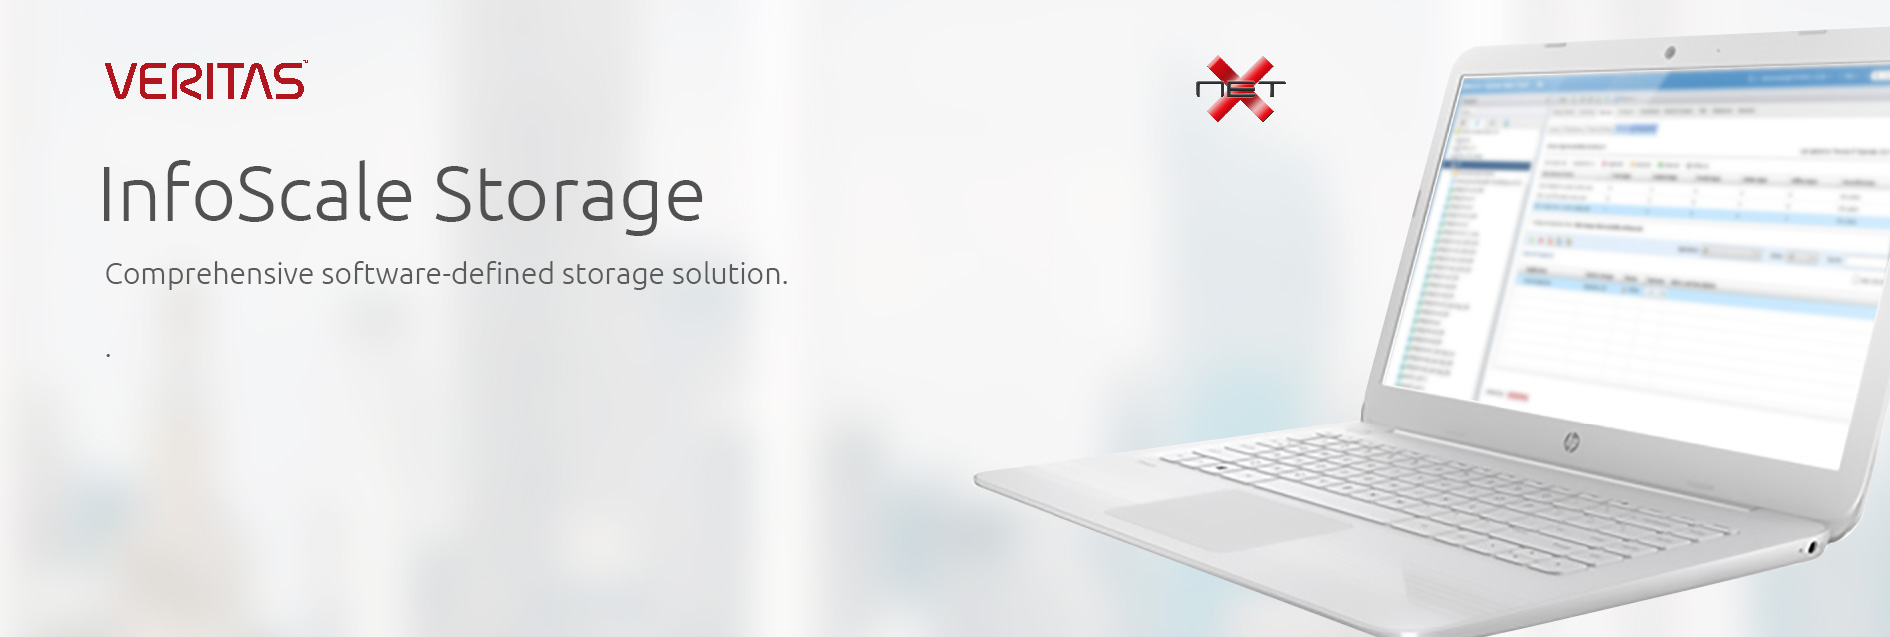 netx-veritas-infoscale-storage-services banner